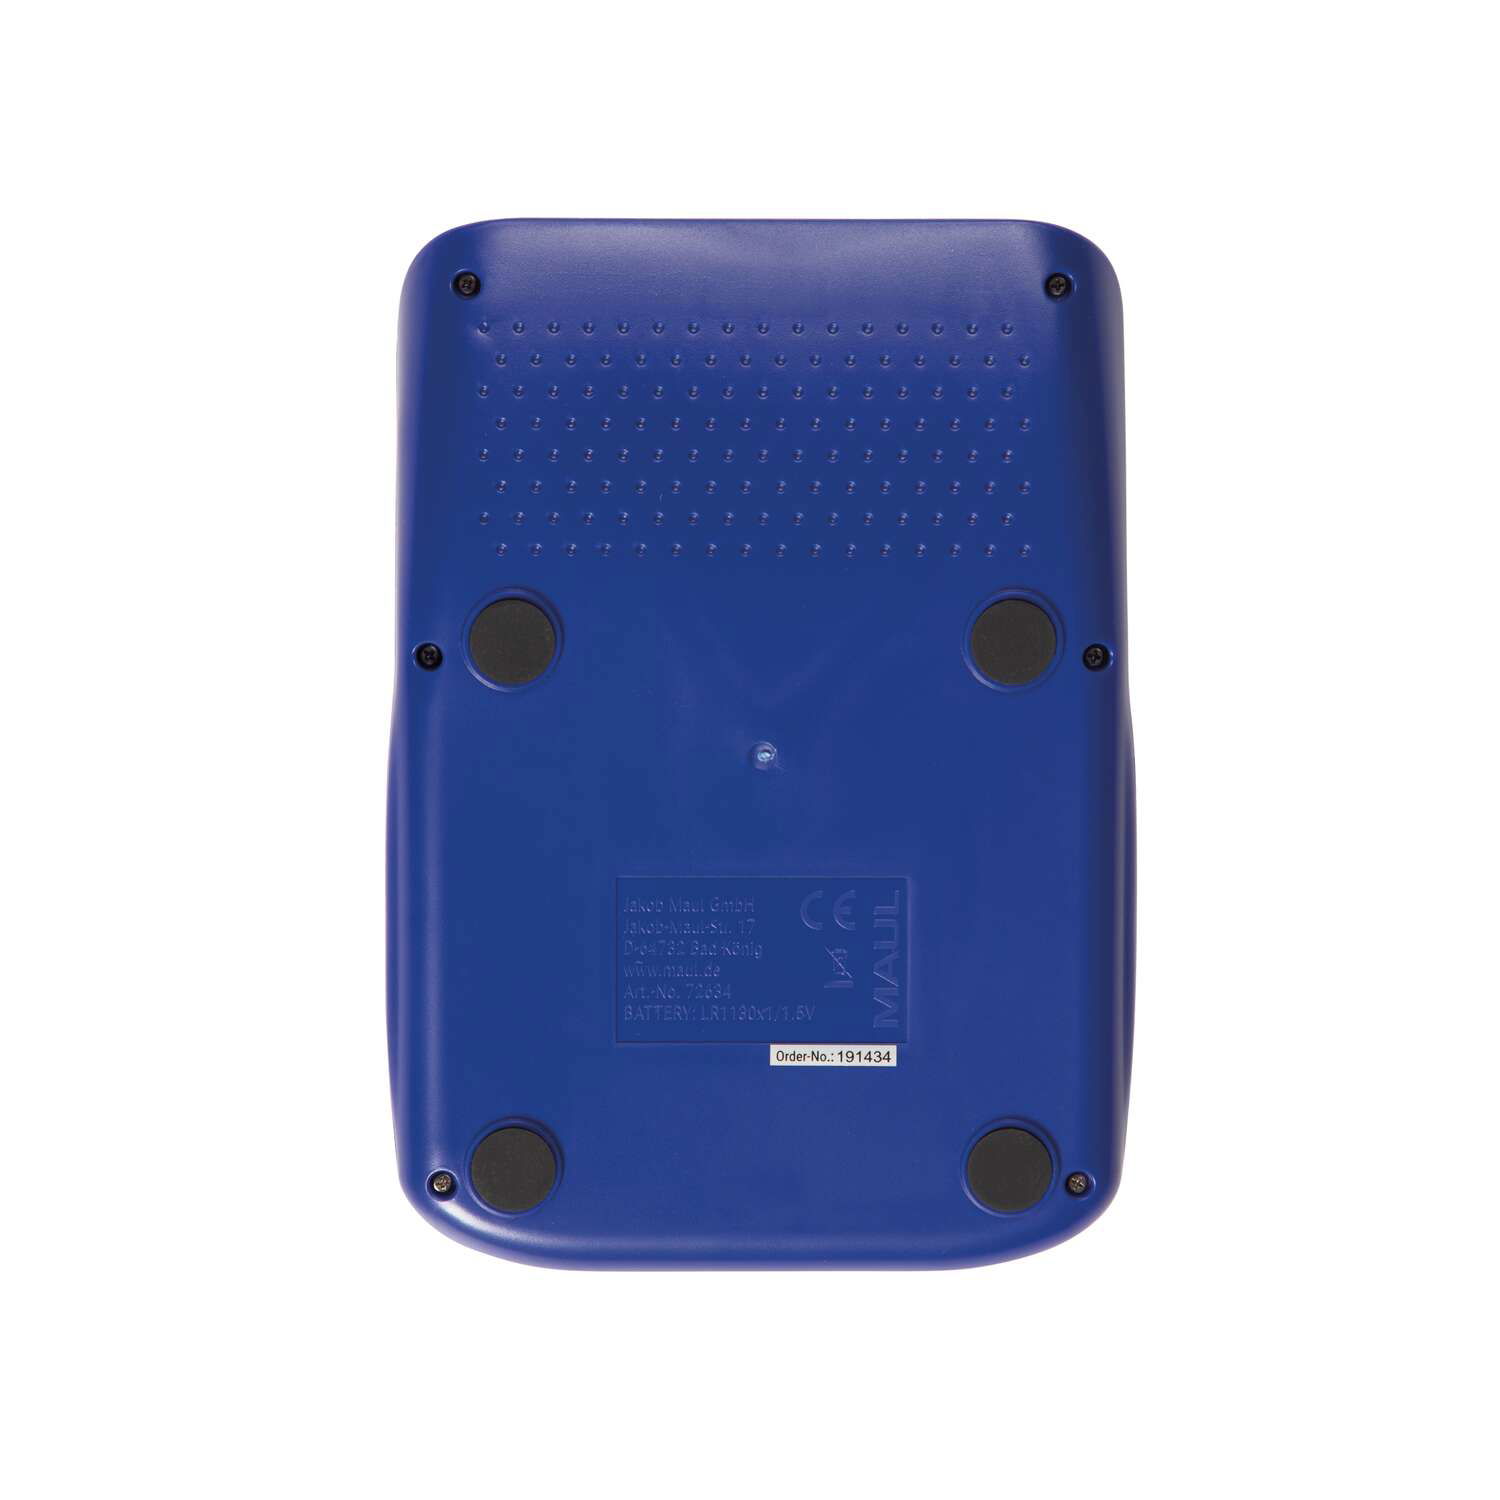 MAUL Tischrechner MJ 550 Solar Batterie 1-zeilig, 8 Ziffern hellblau